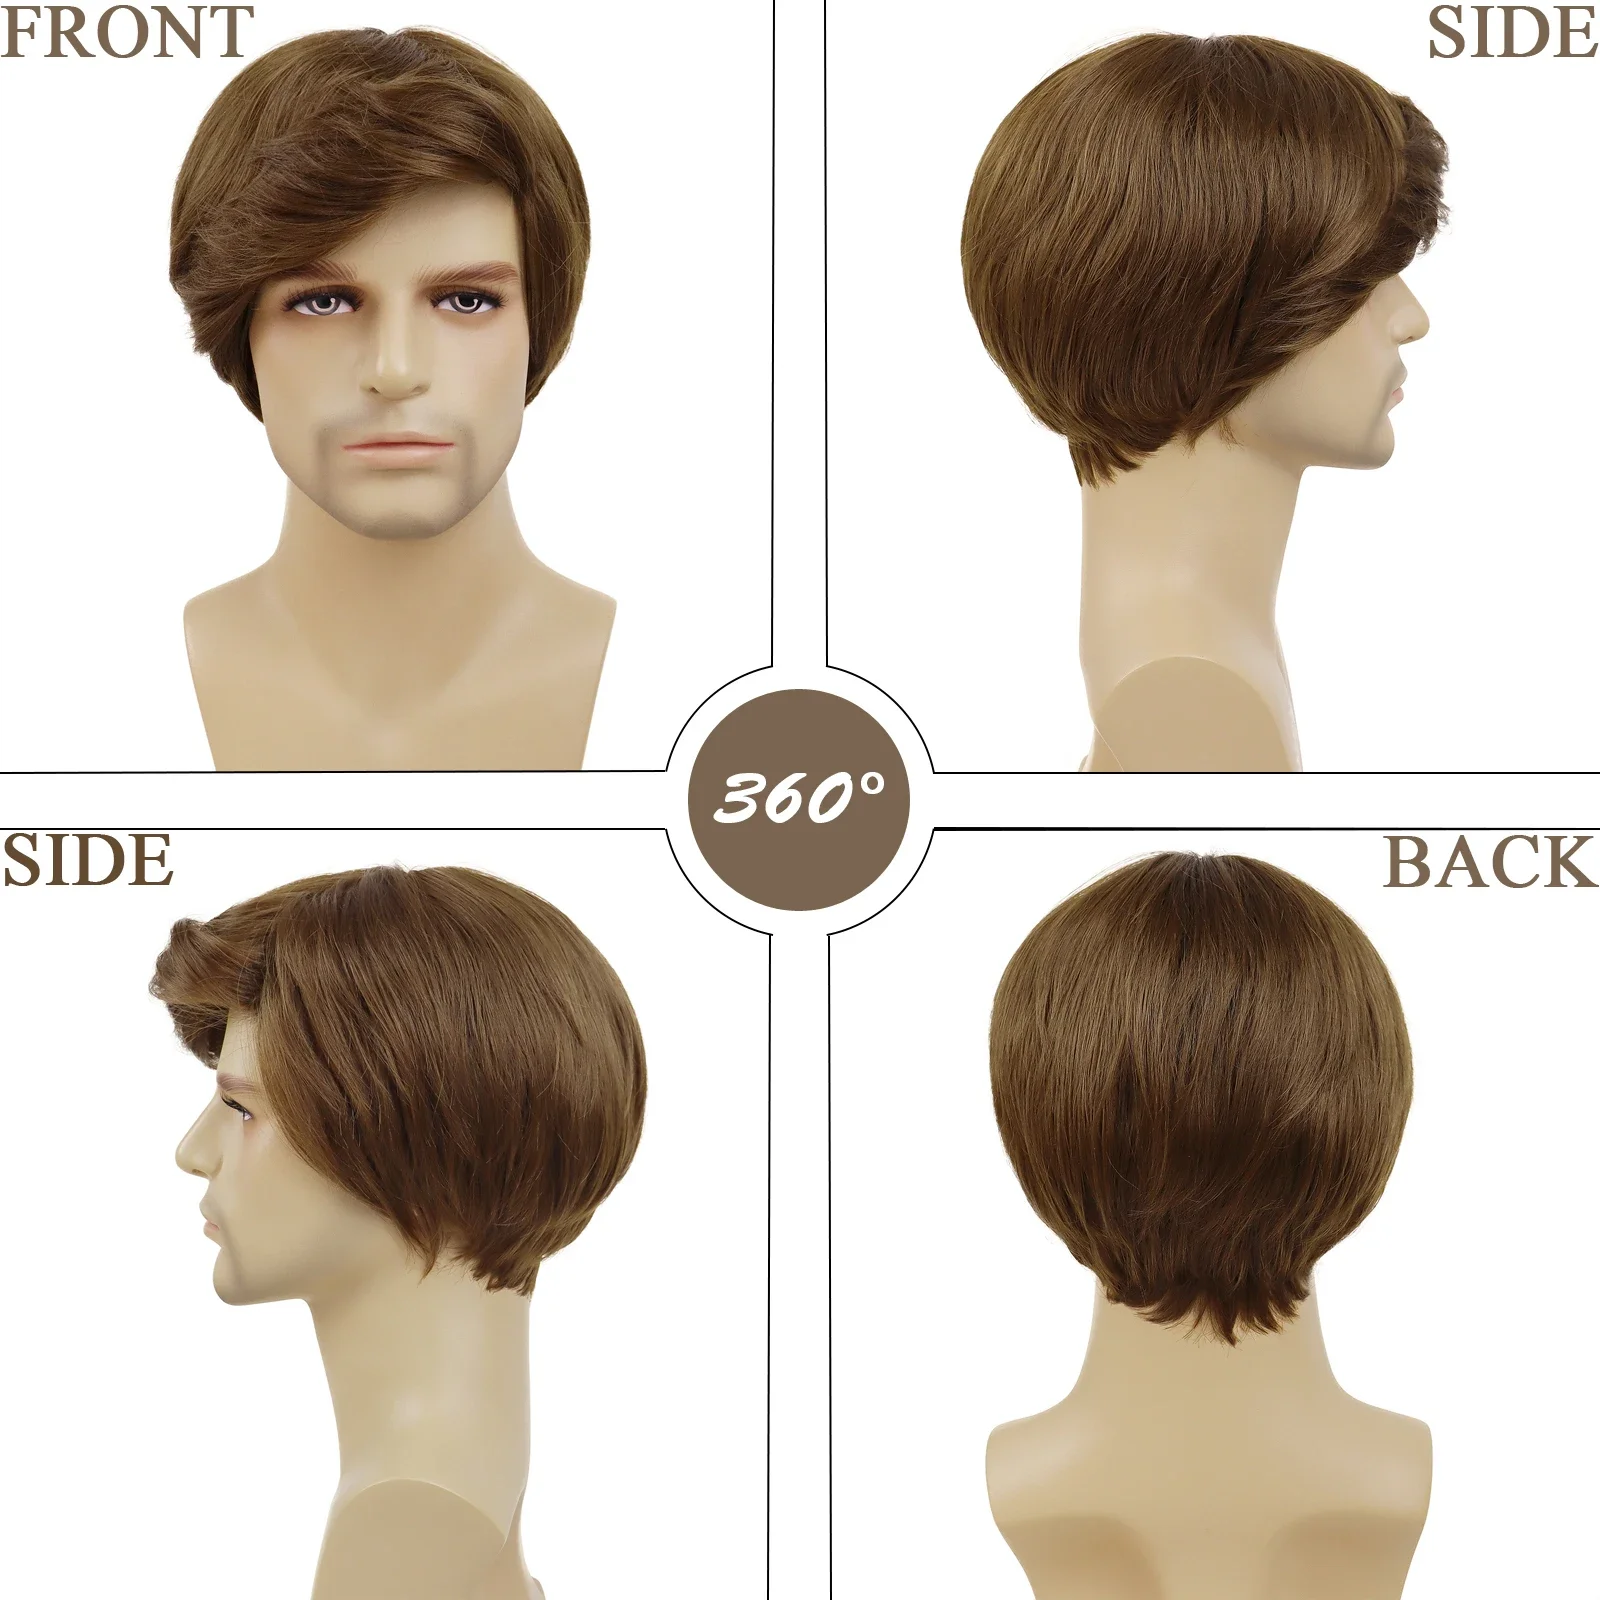 GNIMEGIL Синтетические парики с короткими волосами для мужчин Коричневый парик Натуральные прически Кудрявые с челкой Красивая замена Косплей Парик Костюм